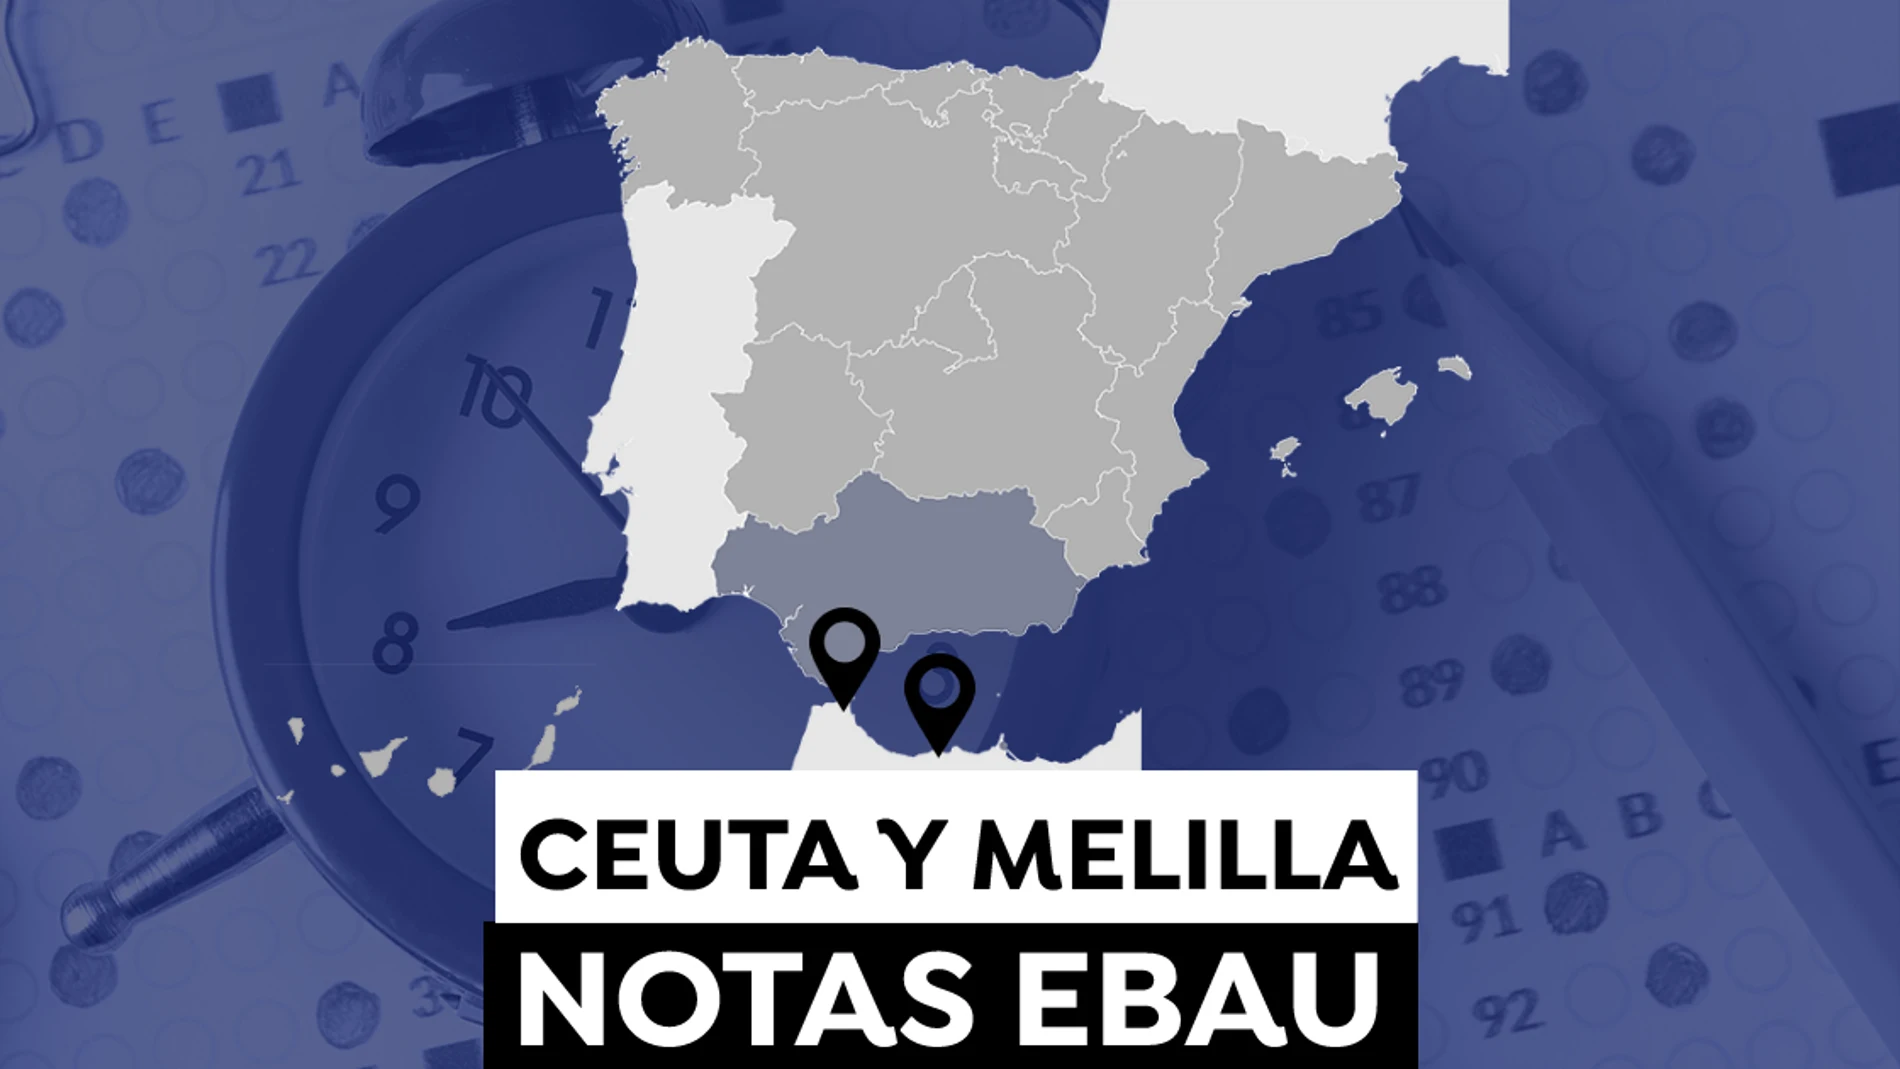 Notas de la Evau en Ceuta y Melilla 2021: Consulta los resultados de la selectividad